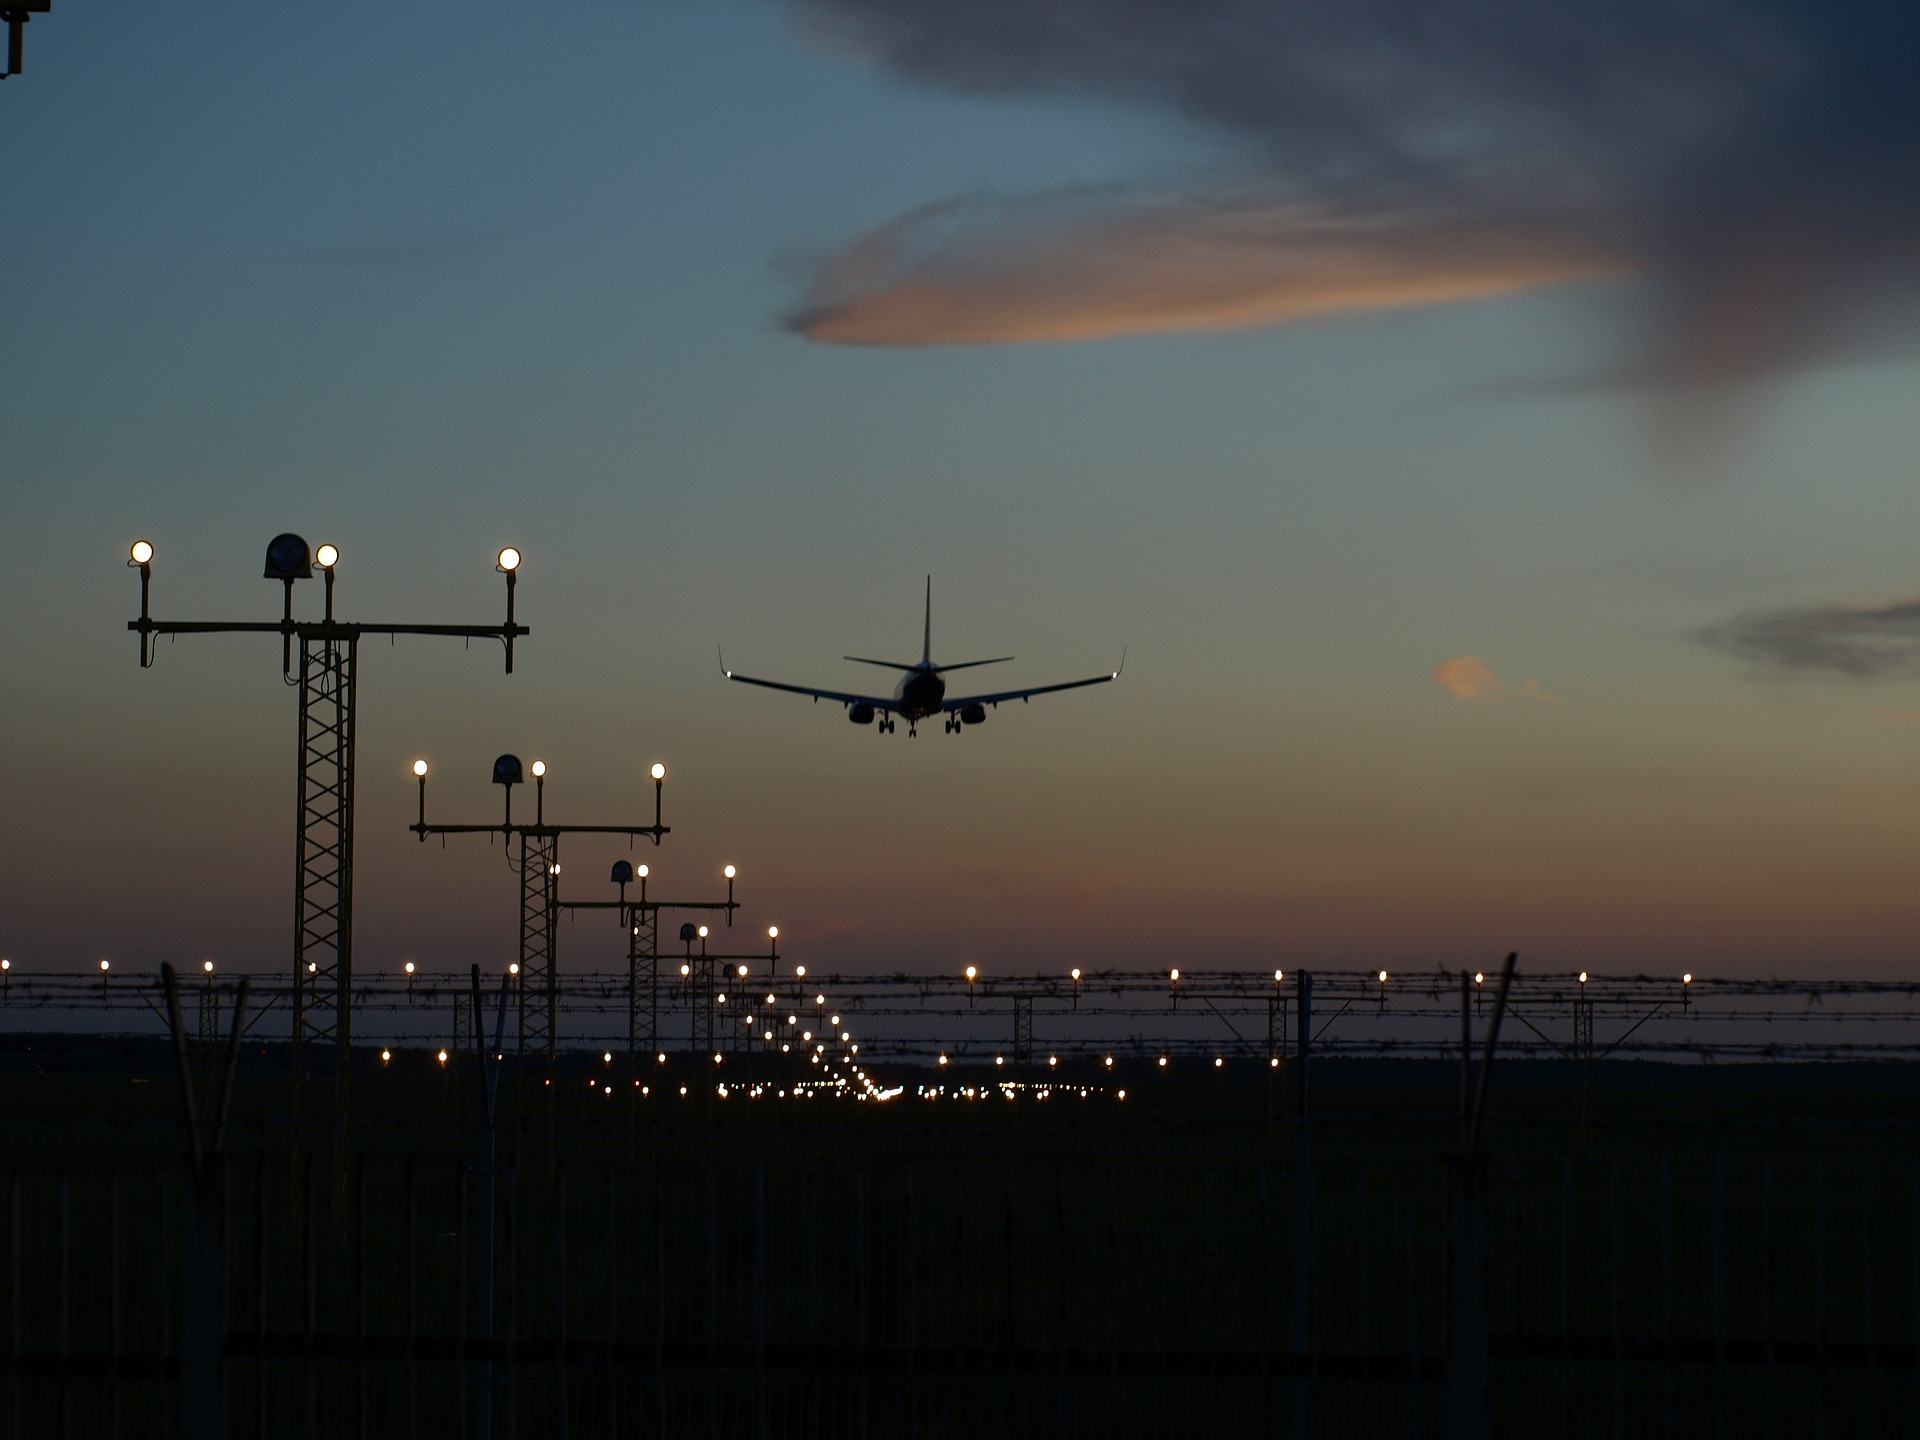 Net zero da aviação pode atrasar cinco anos, indica pesquisa da GE Aerospace. Na imagem: Avião voando ao anoitecer com uma série de postes sinalizadores, à esquerda (Foto: Pixabay)